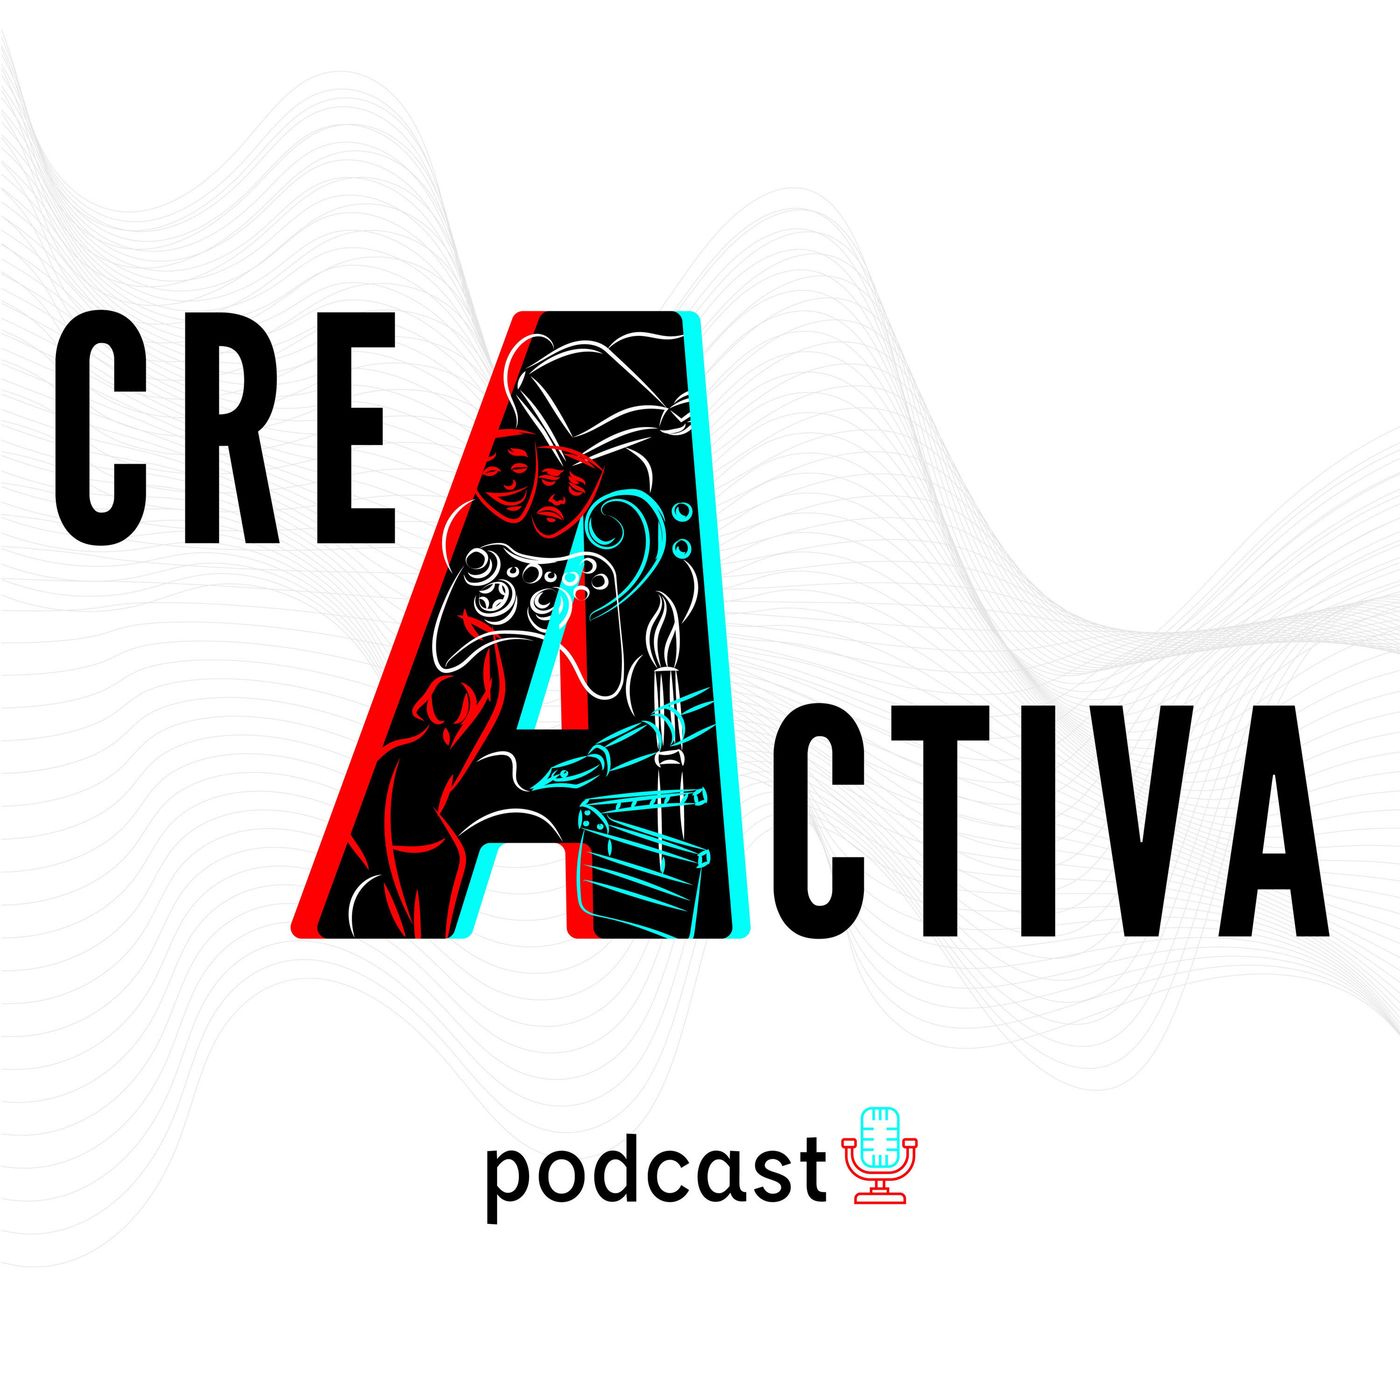 Creactiva Podcast 09 - La libertad de movimiento en la danza